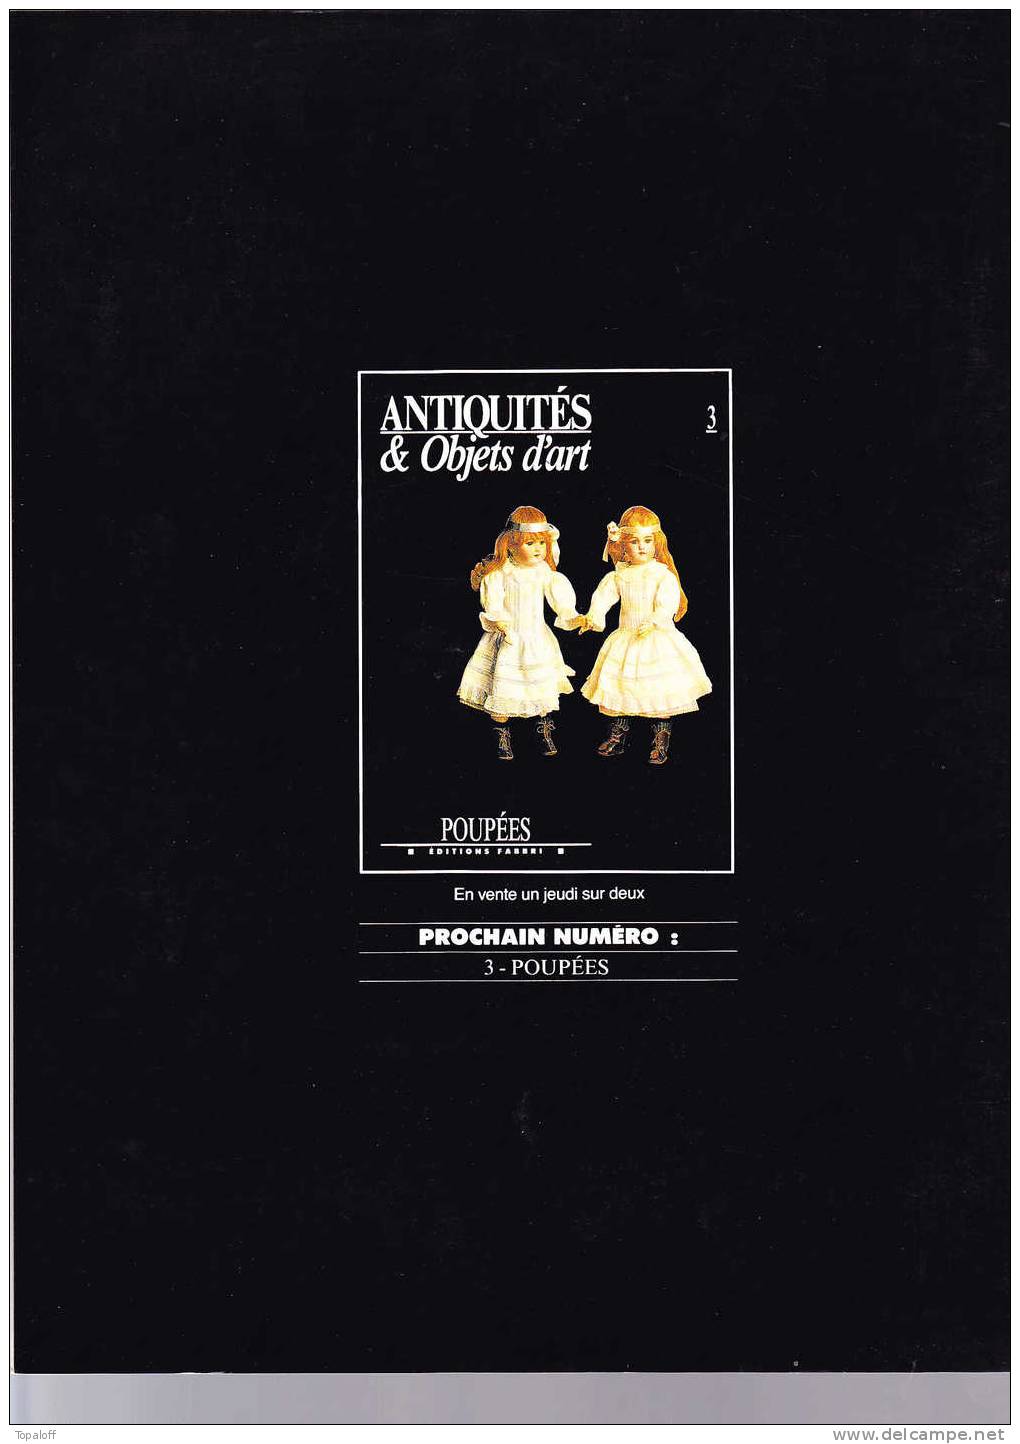 ANTIQUITES Et OBJET D'ART  éditions FABRI  1990 - Tapisseries -     82 Pages - Verzamelaars